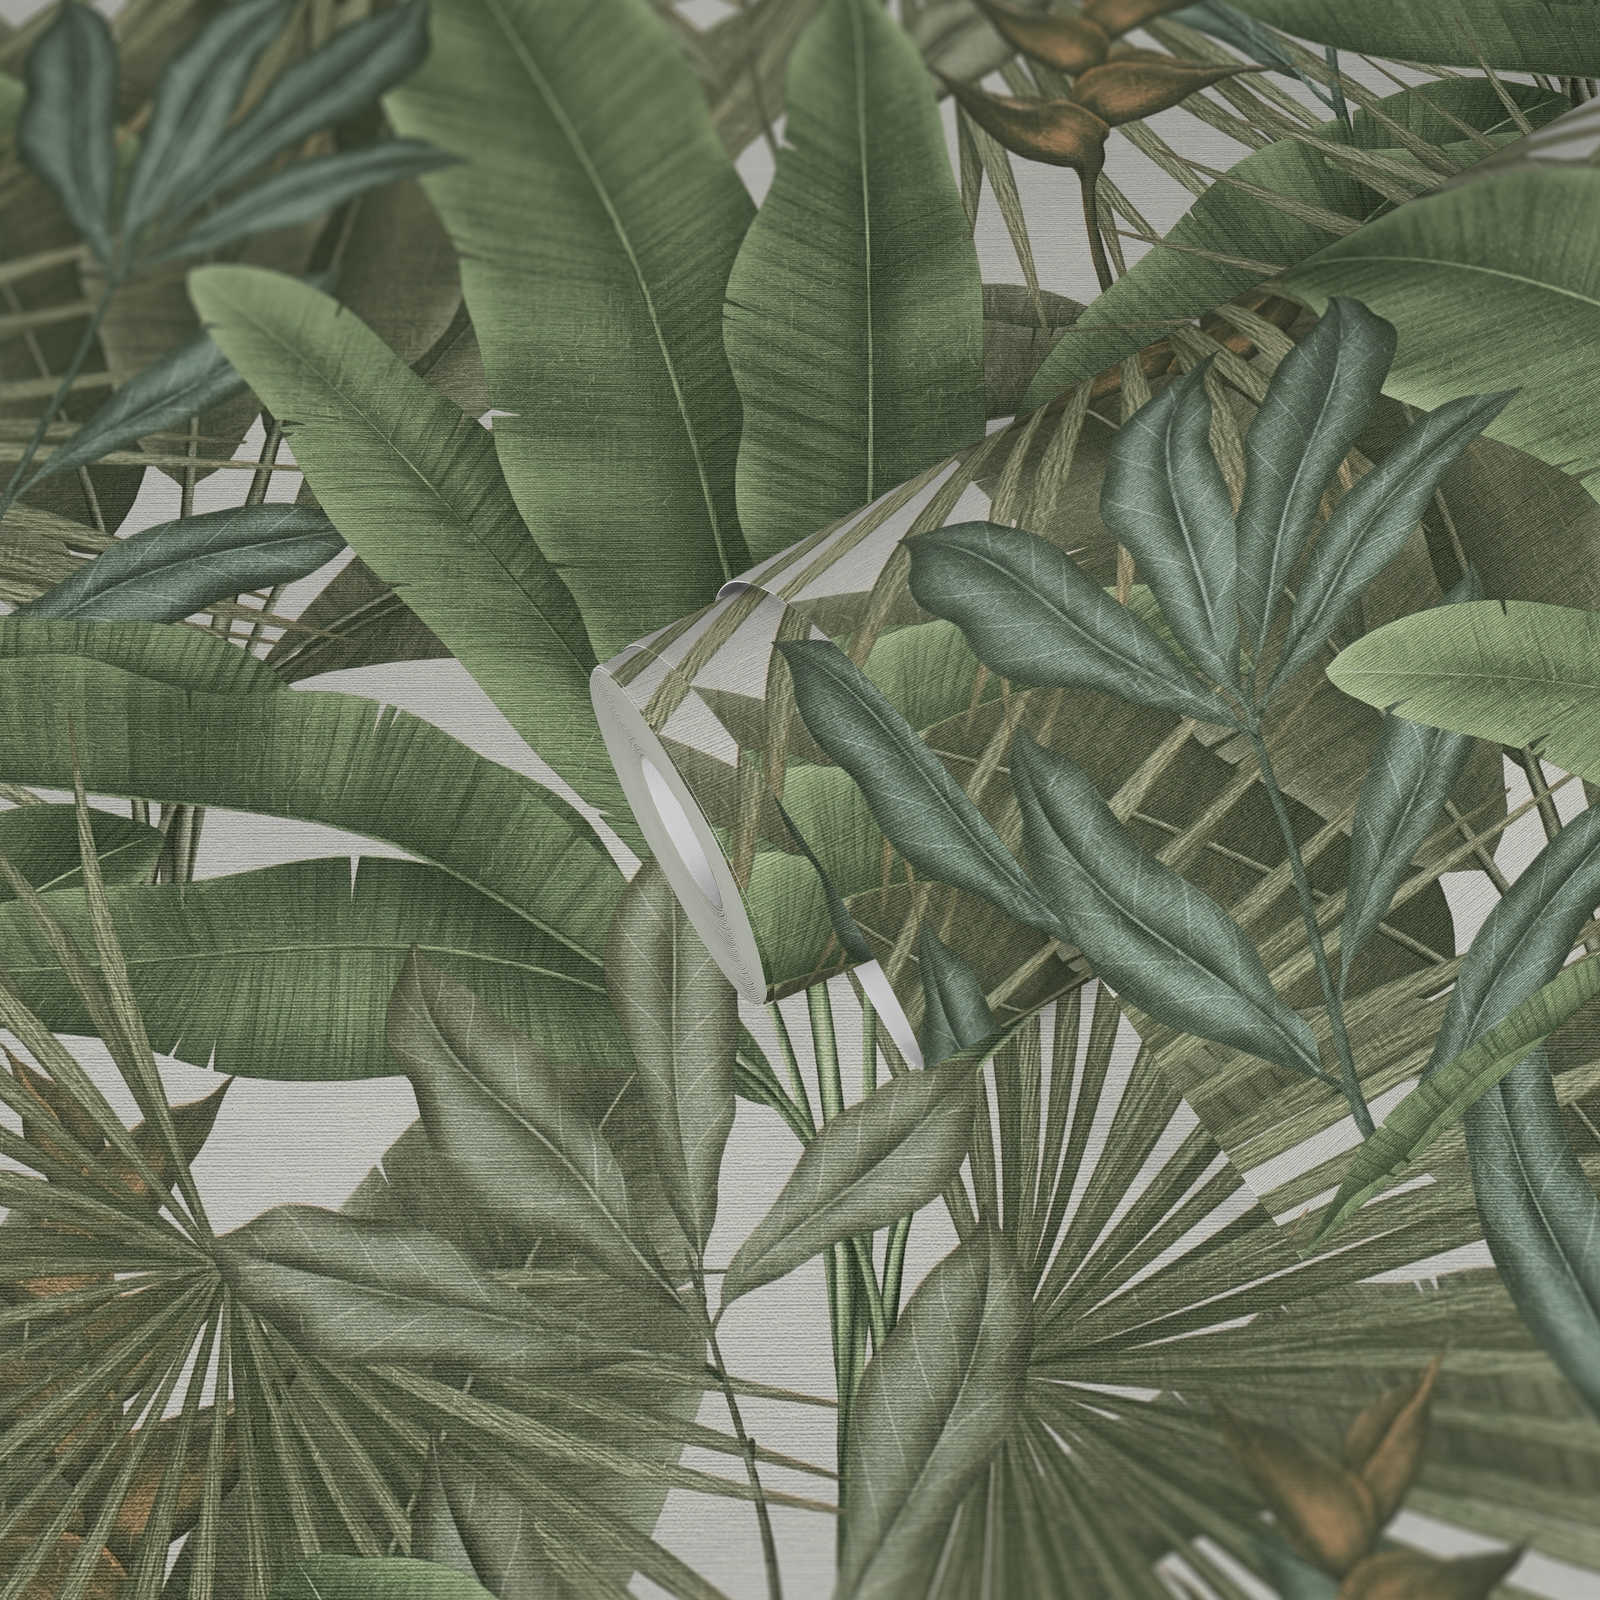             papier peint en papier jungle floral légèrement structuré avec grandes feuilles - vert, blanc, beige
        